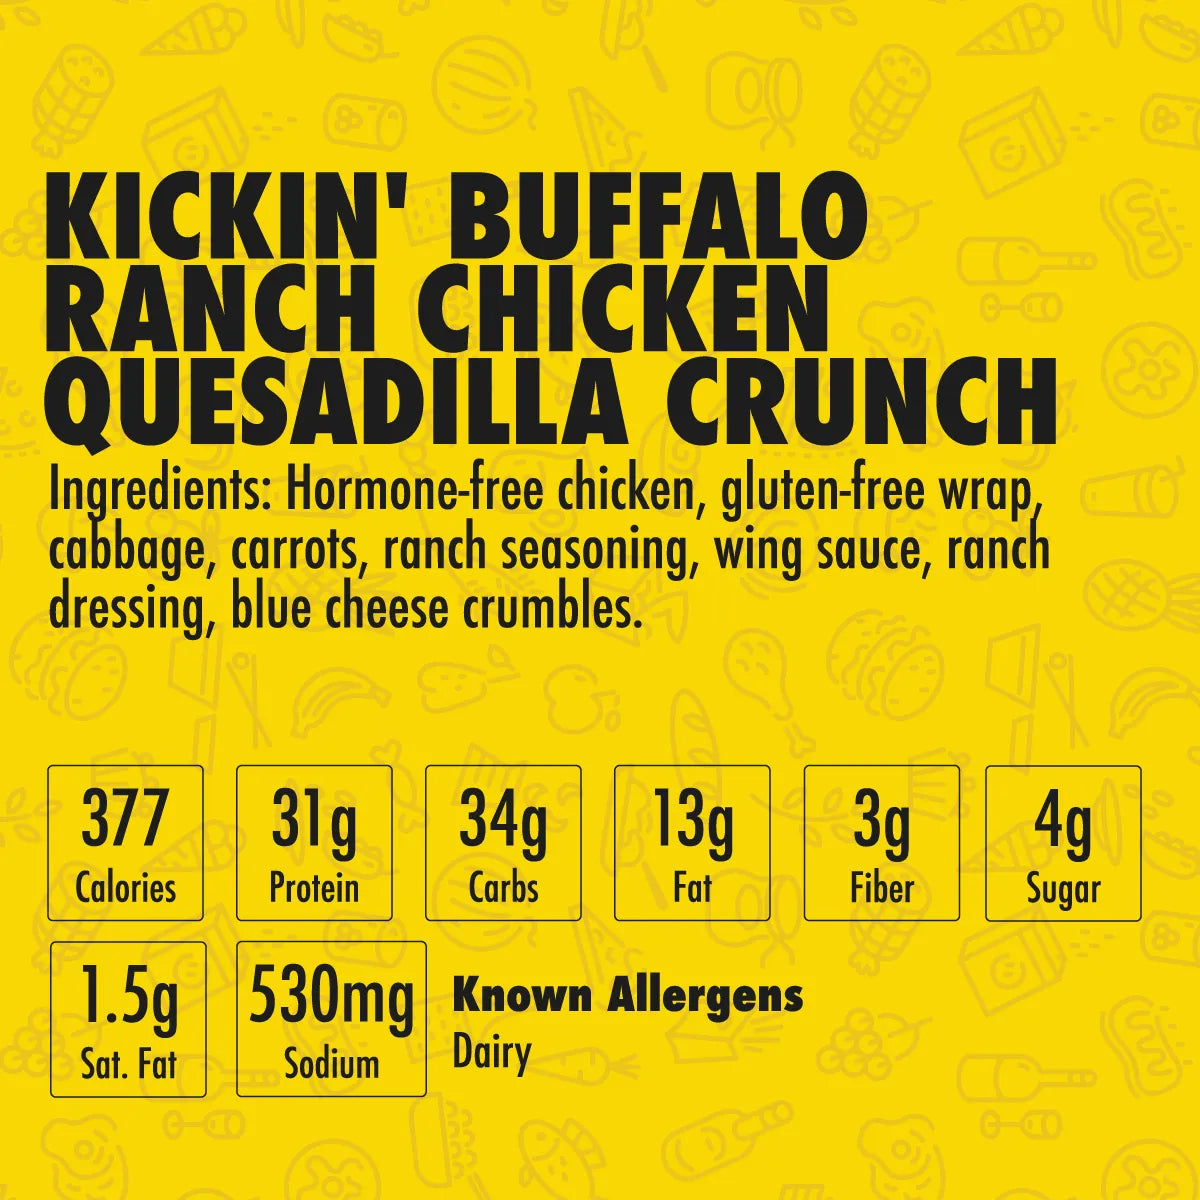 Kickin' Buffalo Ranch Chicken Quesadilla Crunch